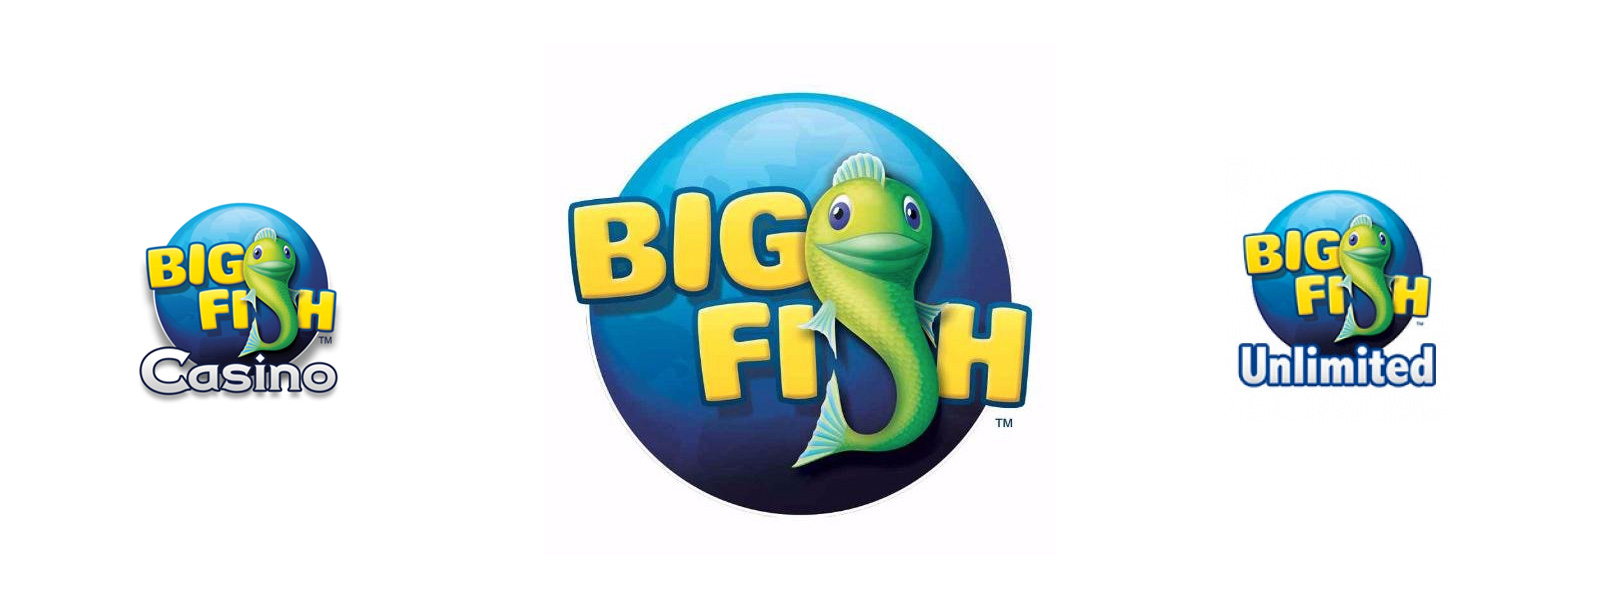 Big Fish Logos